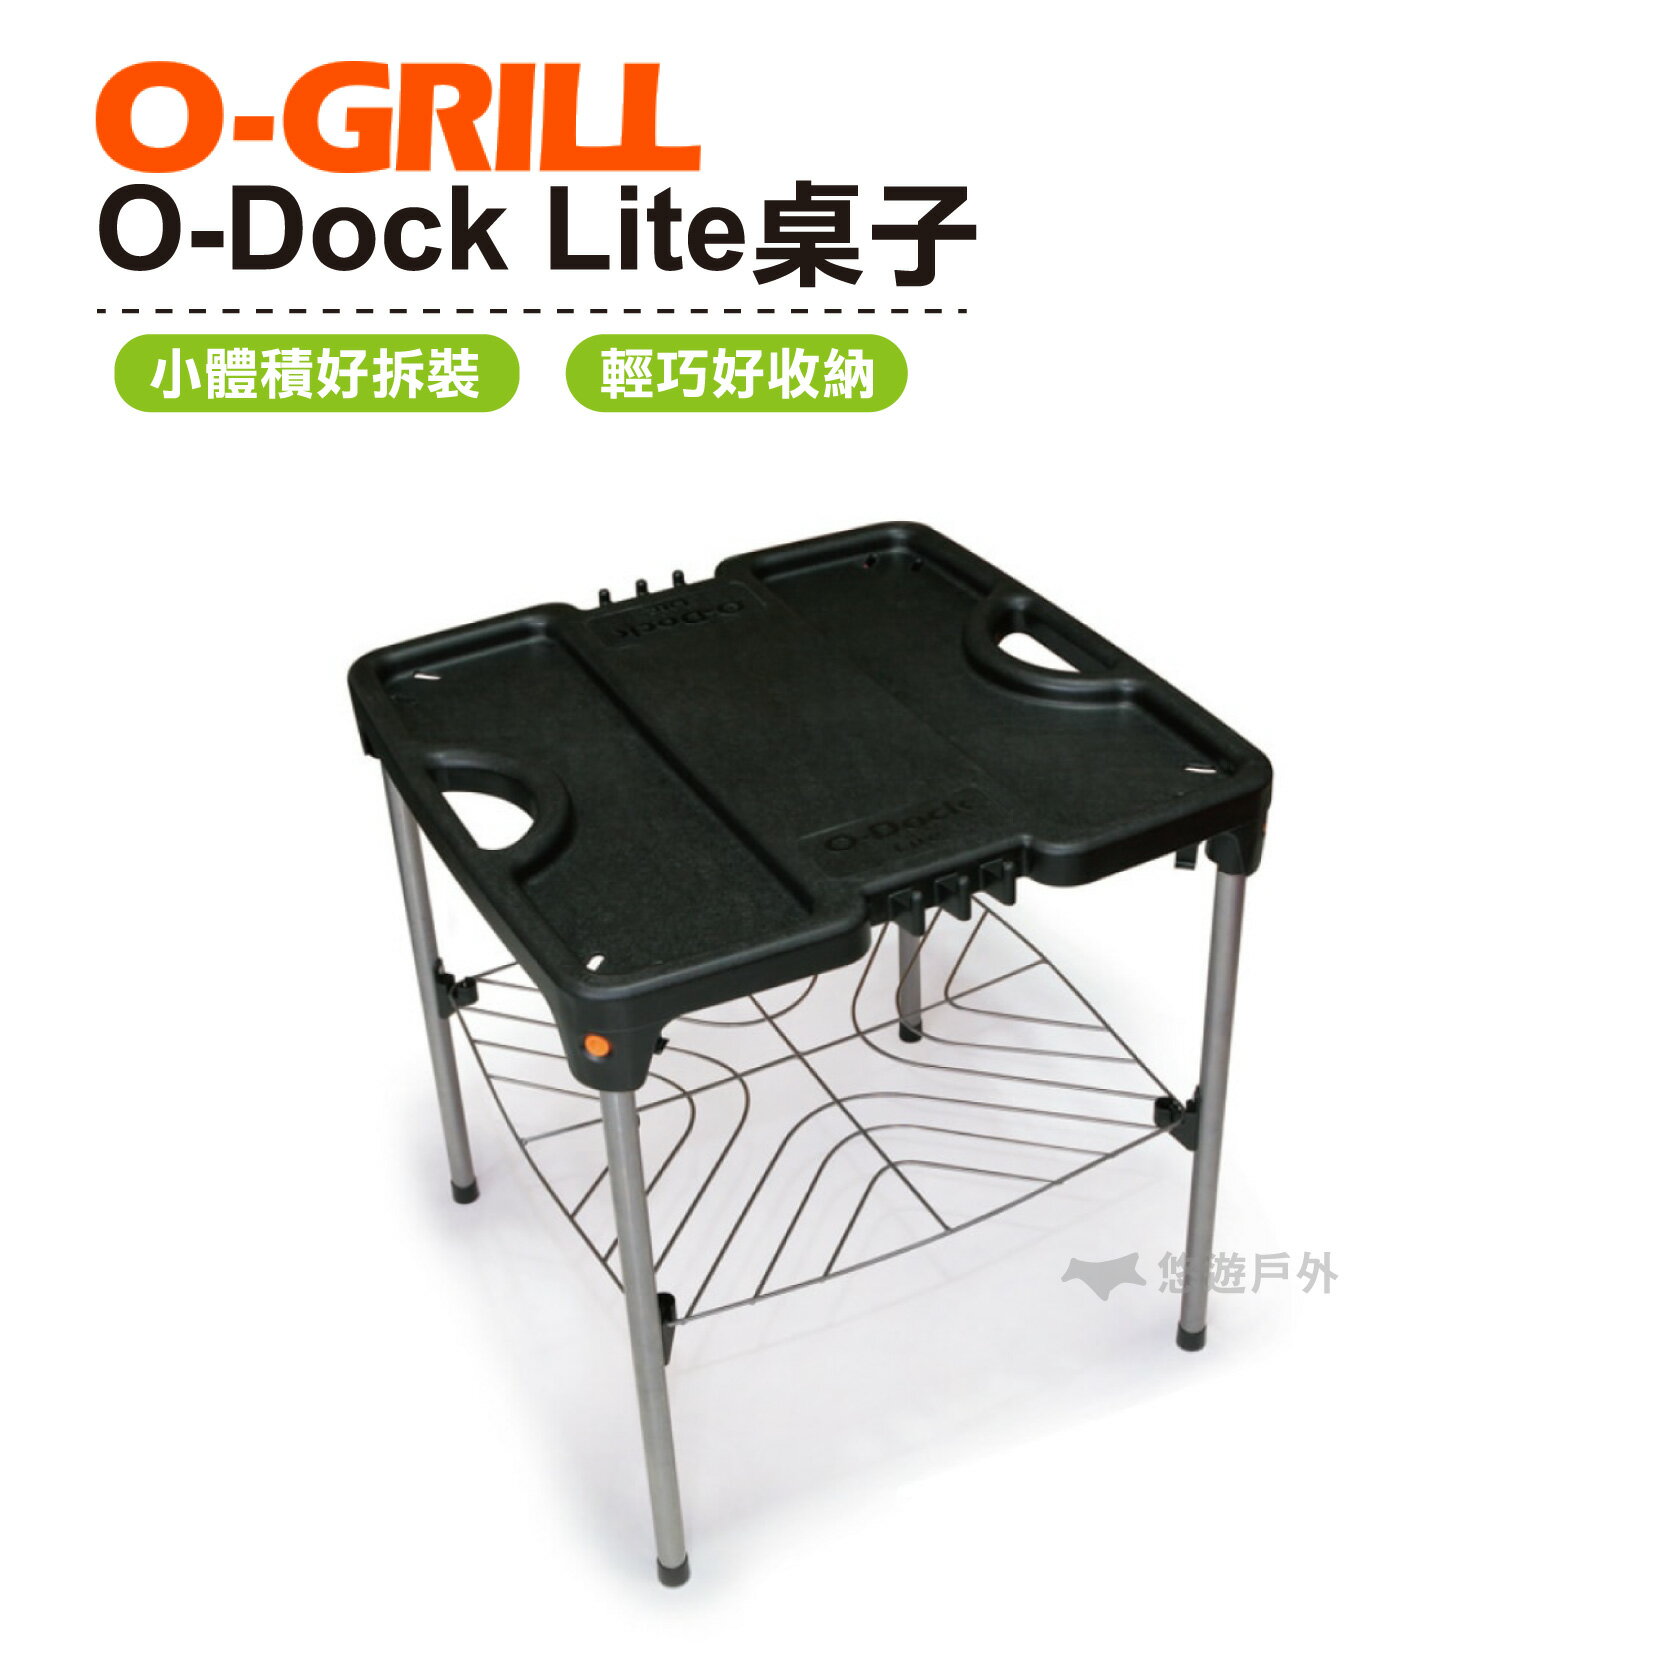 O-GRILL O-Dock Lite桌子 旅遊 露營 登山 烤肉 陽台 【悠遊戶外】